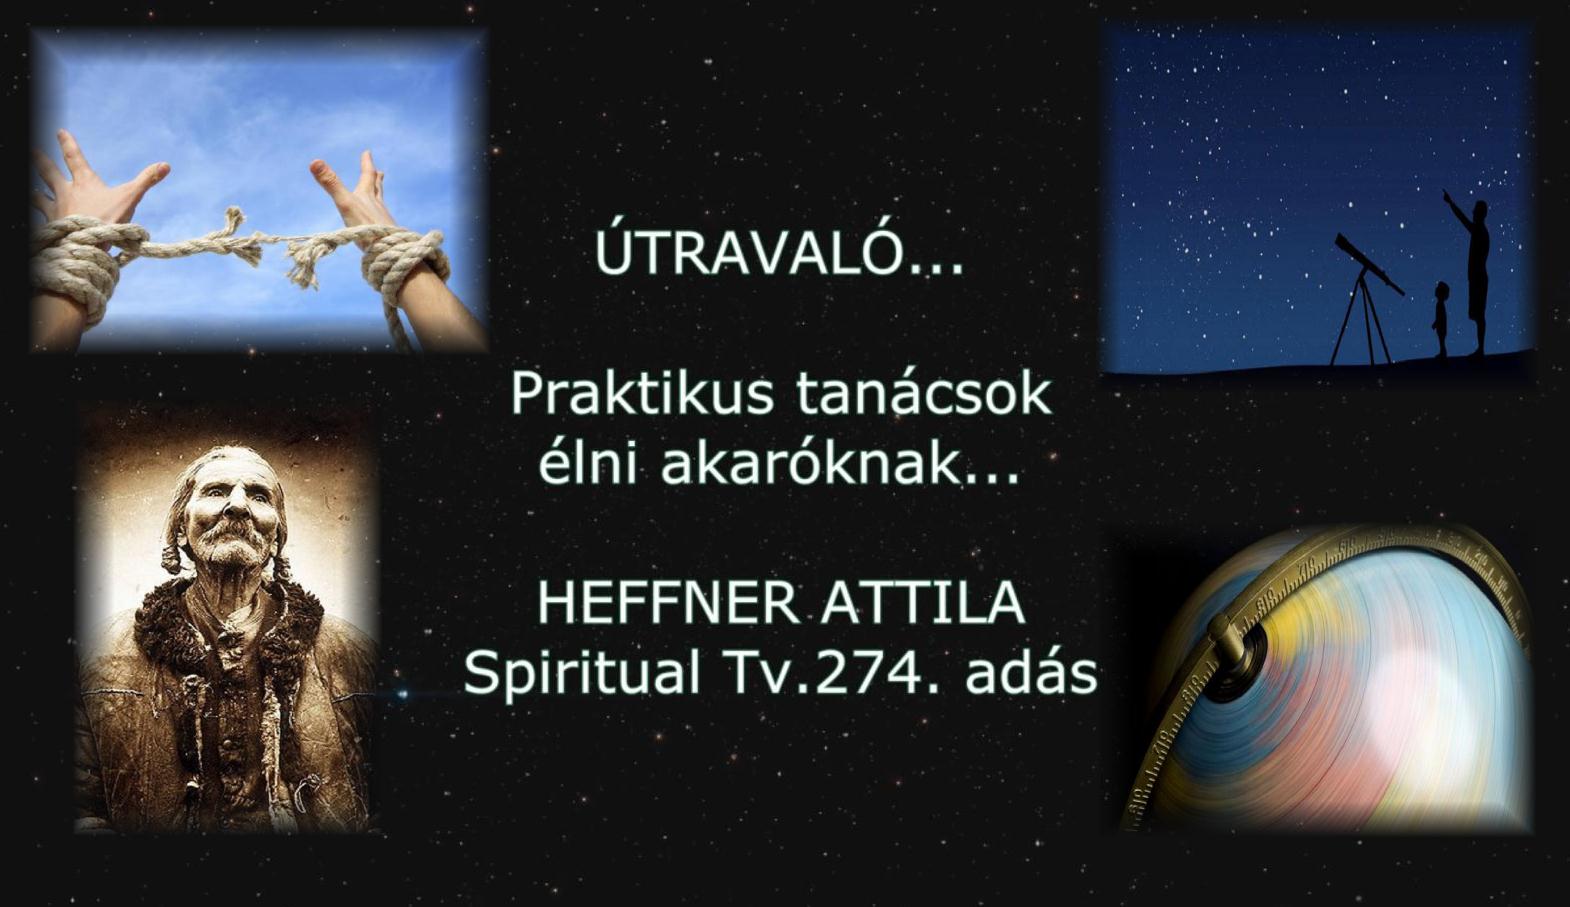 www.spiritualtv.hu